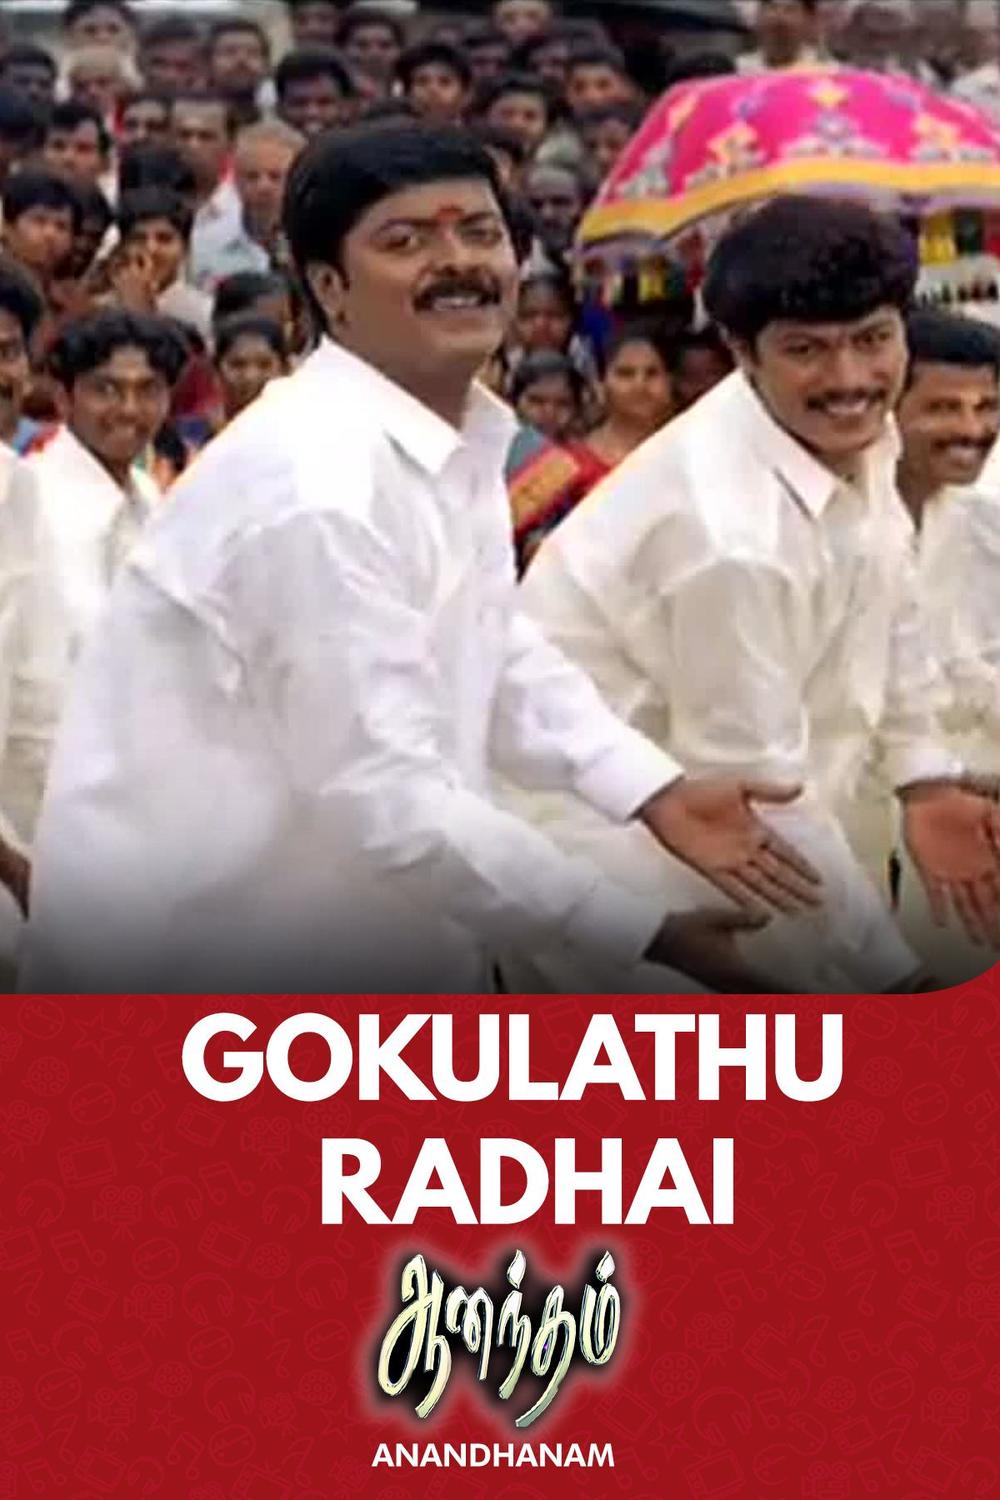 Watch Gokulathu Radhai song online | Sun NXT